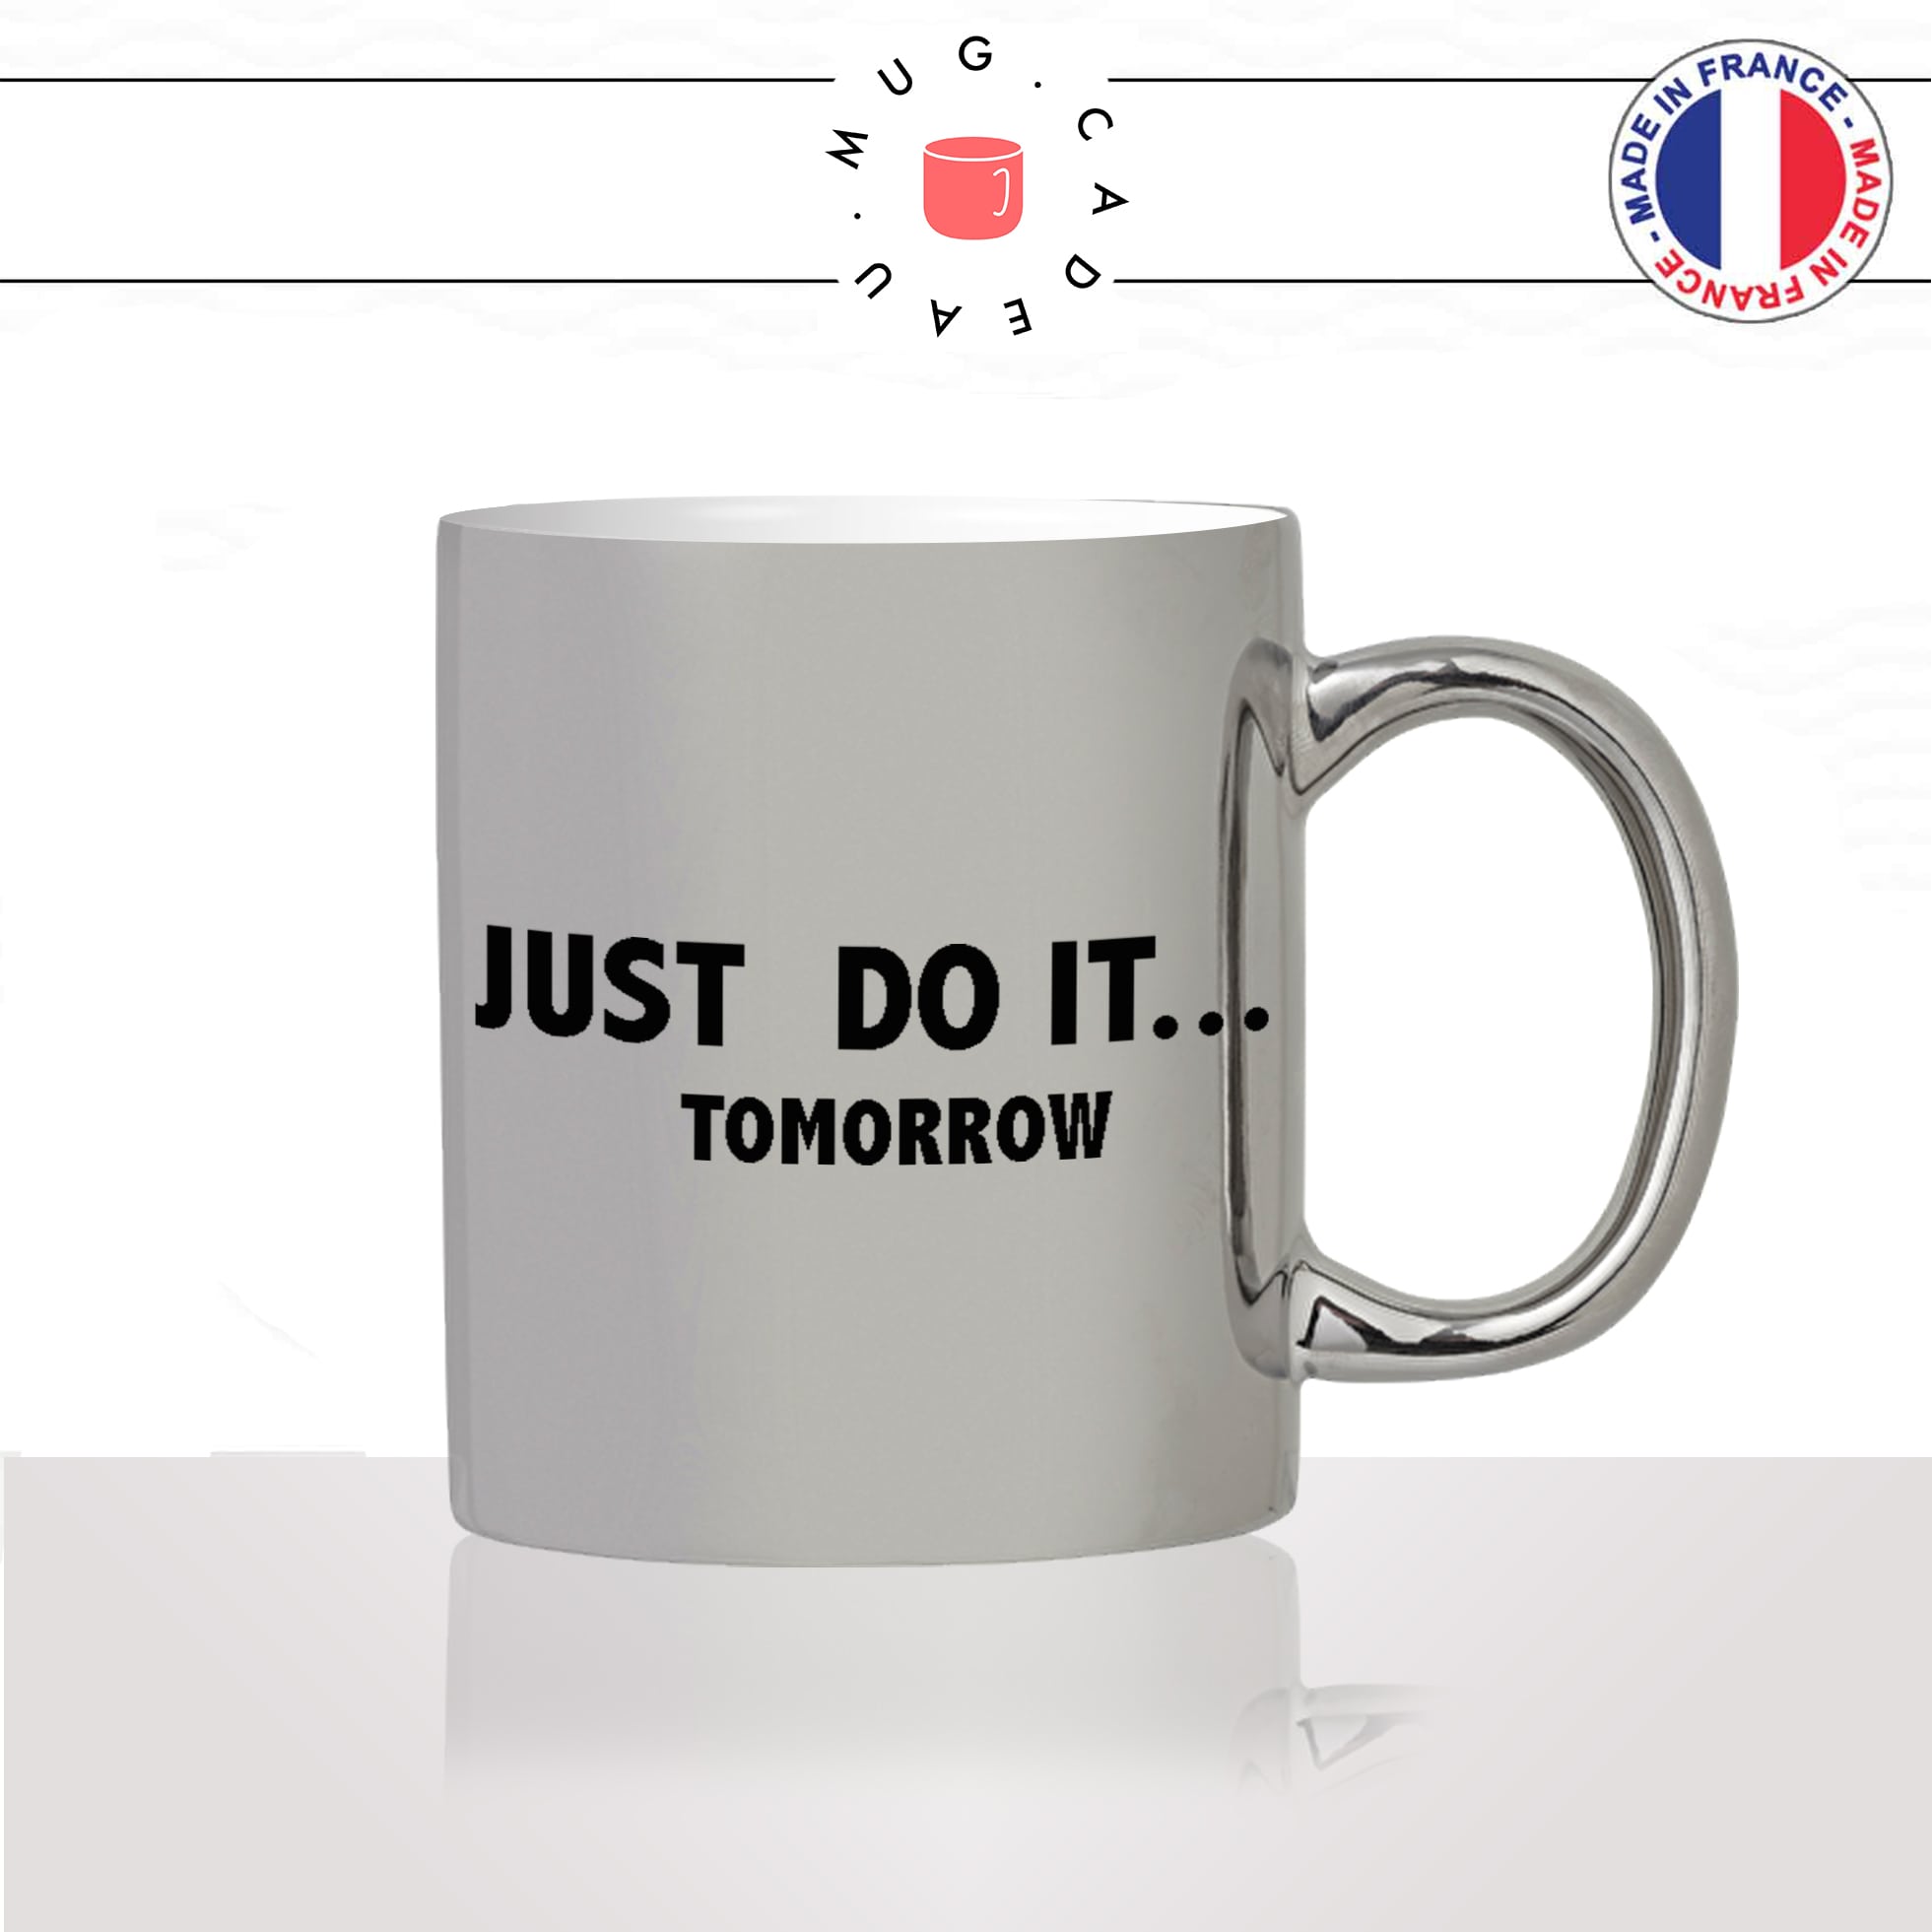 mug-tasse-argent-argenté-silver-just-do-it-tomorrow-flemme-week-end-motivation-sport-colleguehumour-idée-cadeau-fun-cool-café-thé-original2-min